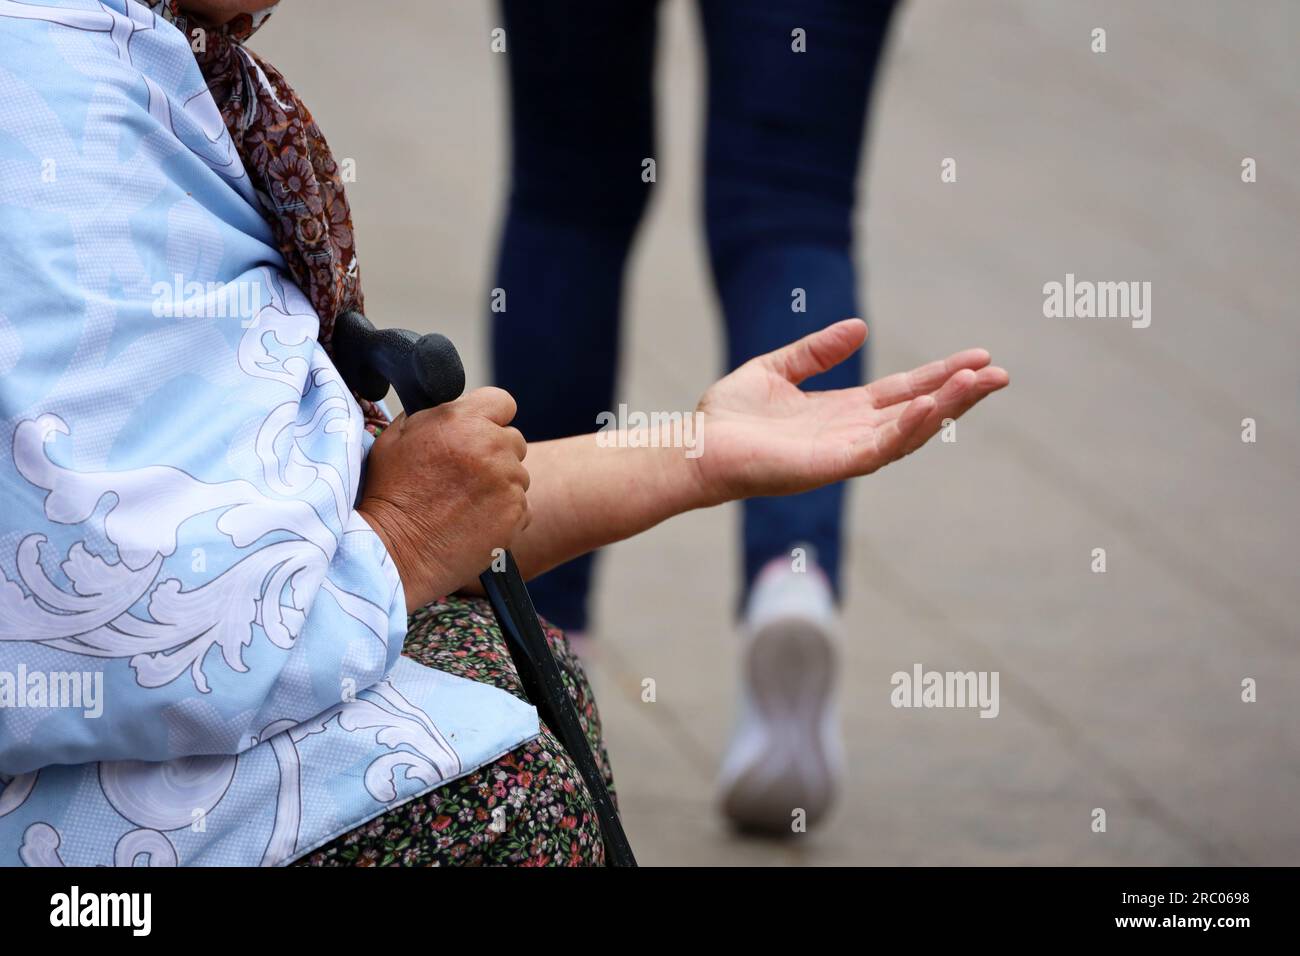 La vecchia mendicante chiede l'elemosina seduta in una strada cittadina con la mano tesa. Povertà, senzatetto e supplicazione Foto Stock